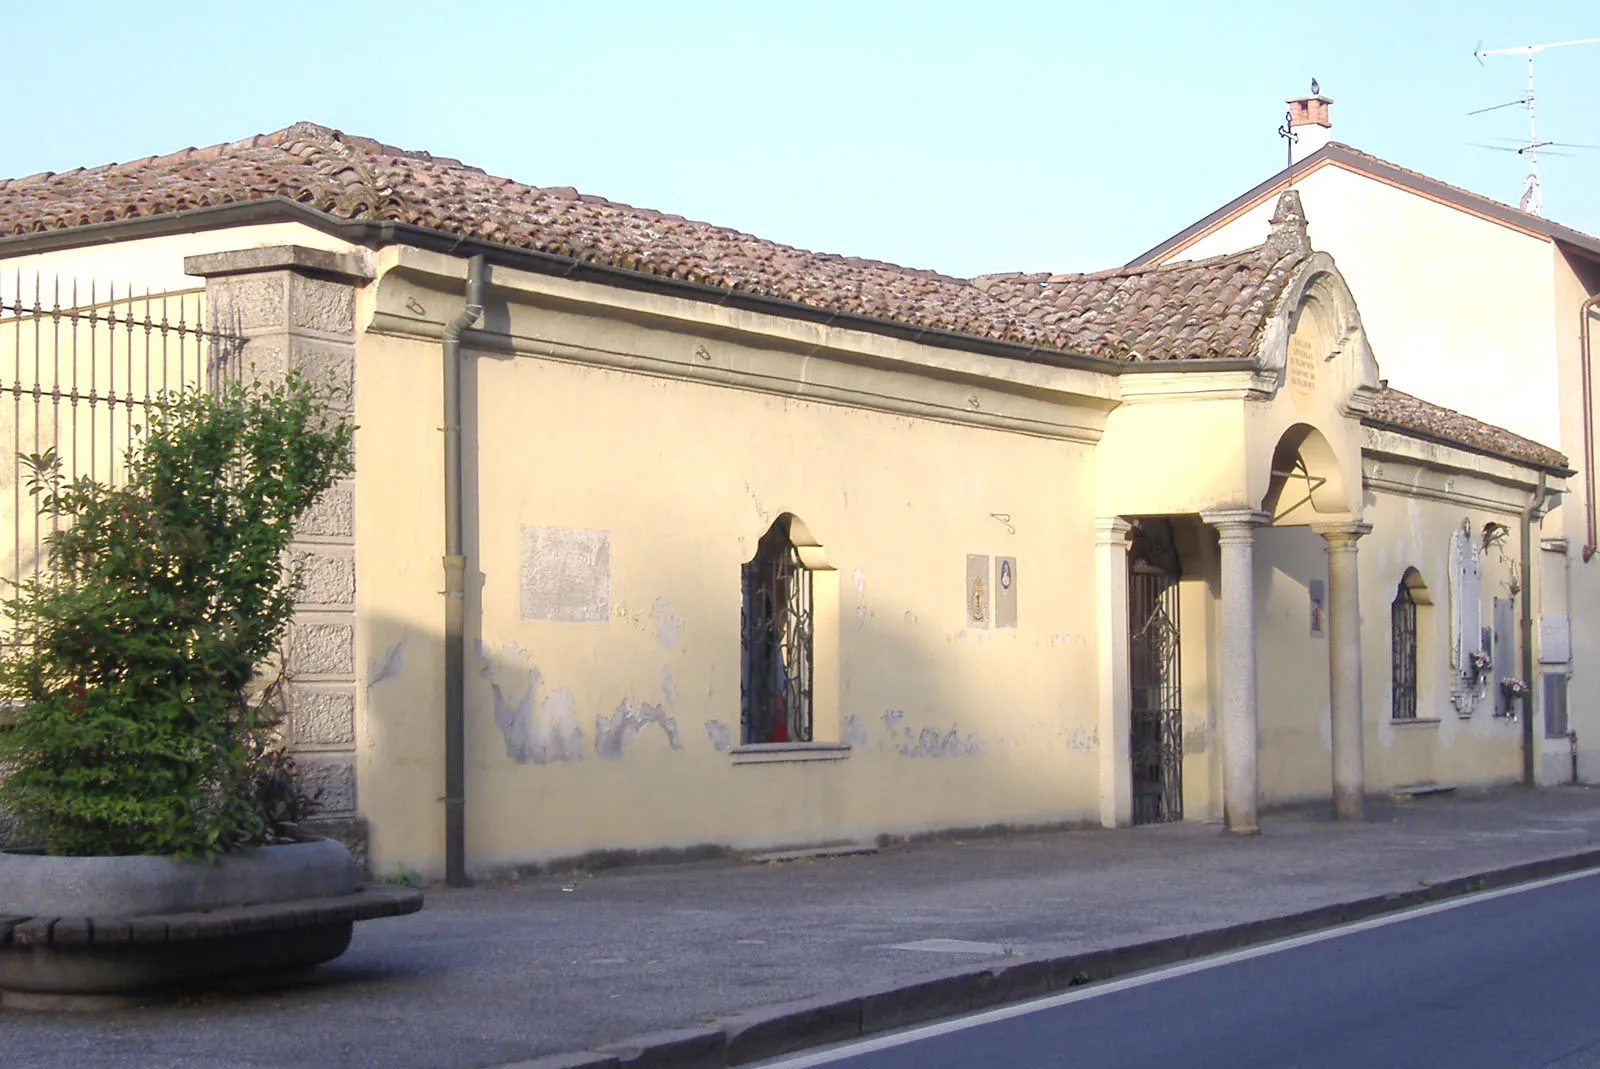 Photo showing: The Lazzaretto of San Fiorano, Italy